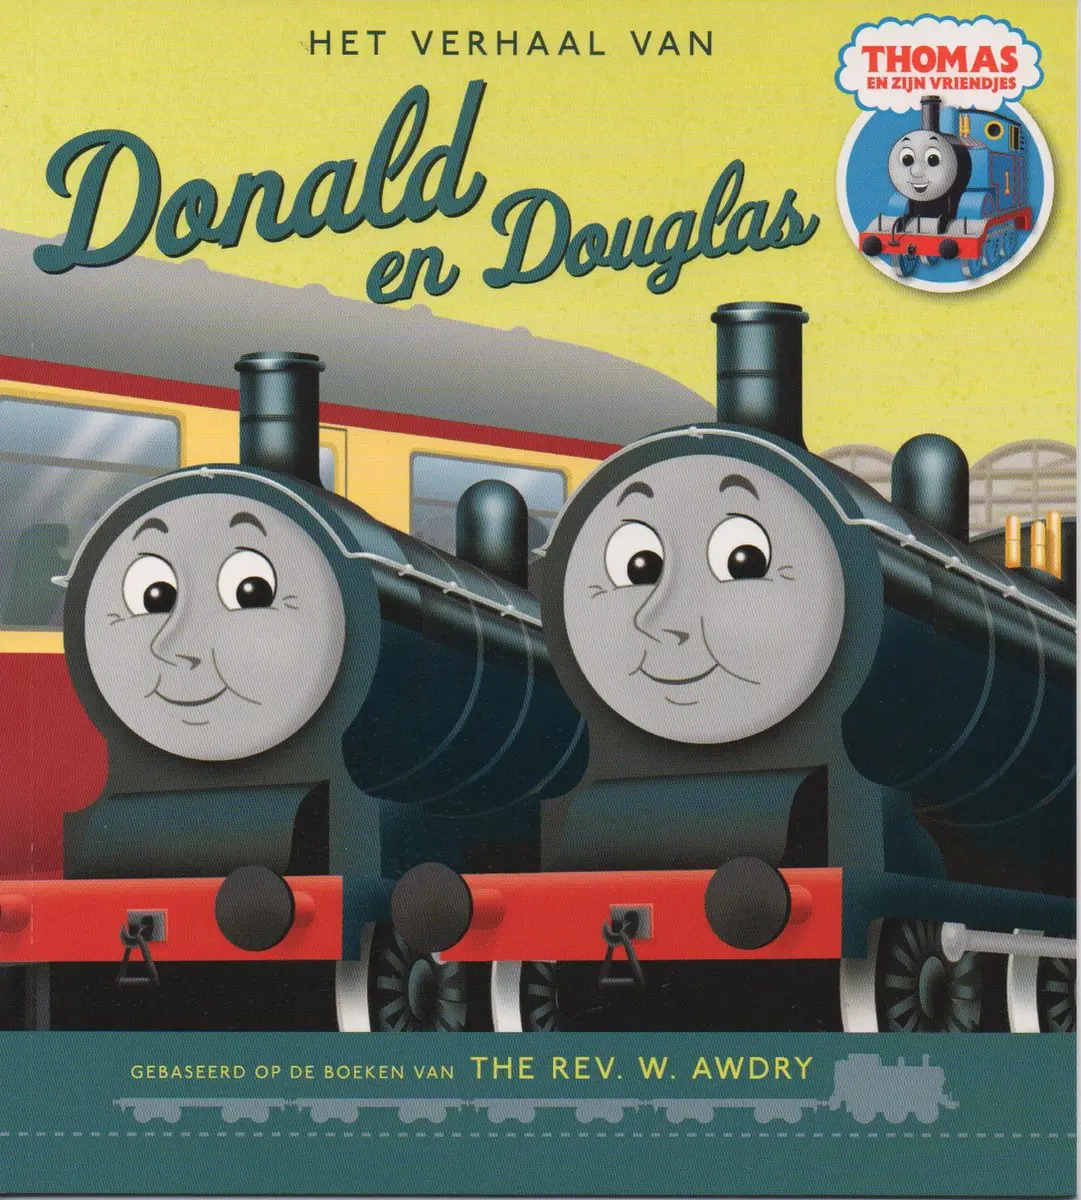 Telegraaf Afhankelijkheid verdediging Thomas en zijn vriendjes - Het verhaal van Donald en Douglas |  Kinderboekjes.nl